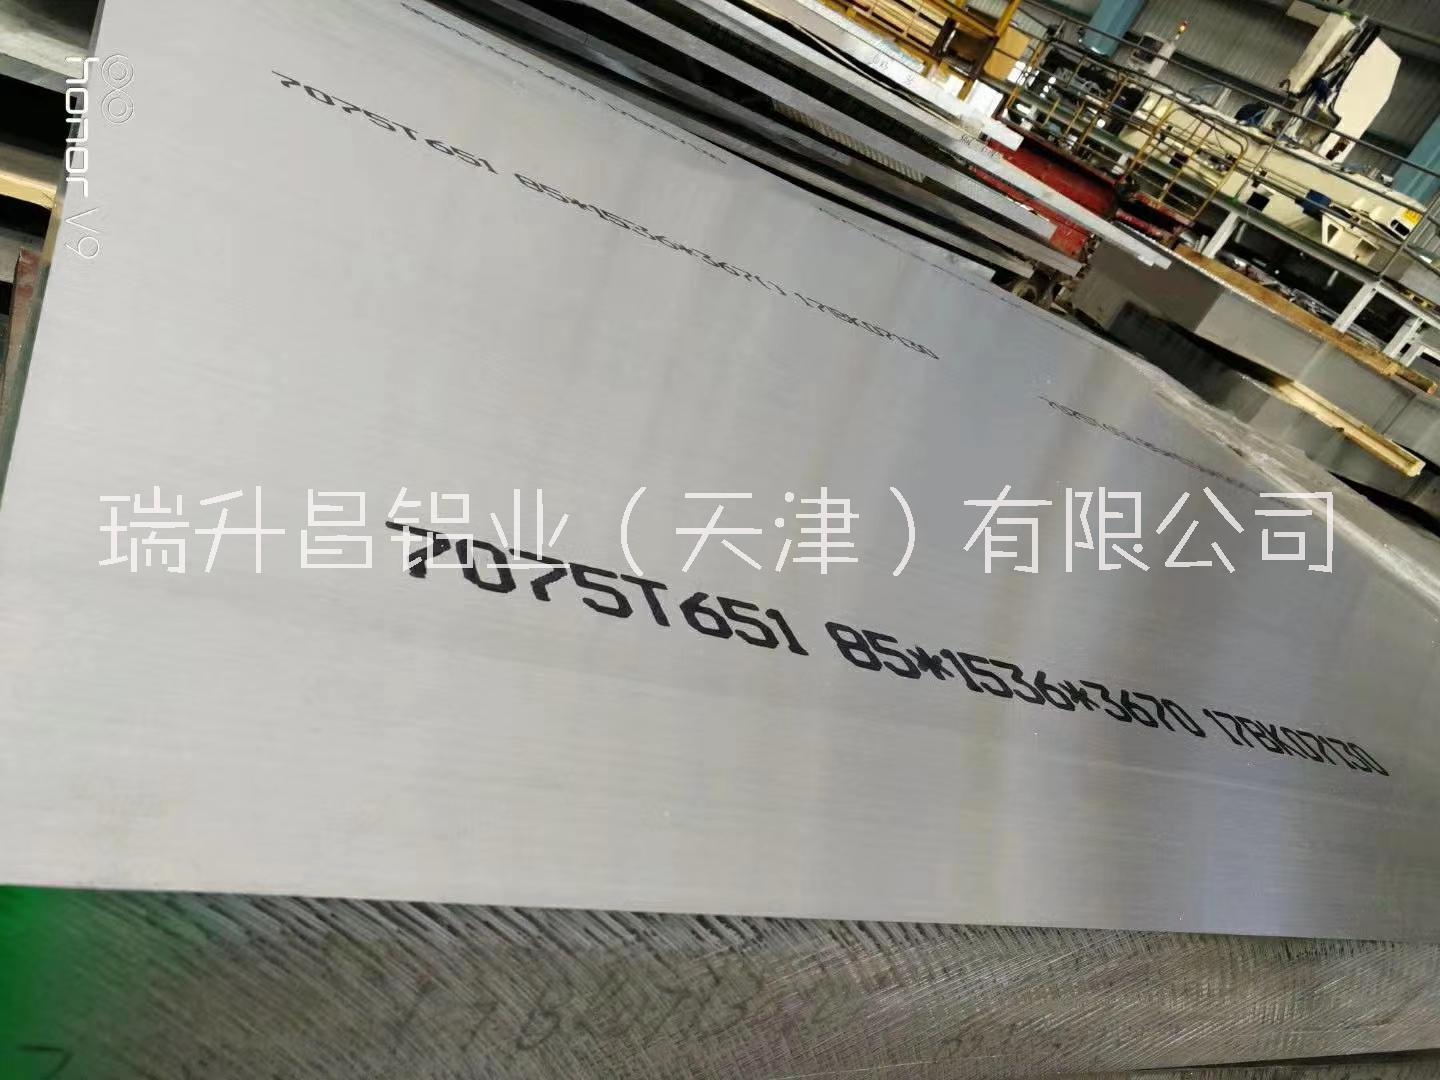 瑞升昌铝业供应7075t651铝板 7075航空用铝 7075合金铝板图片